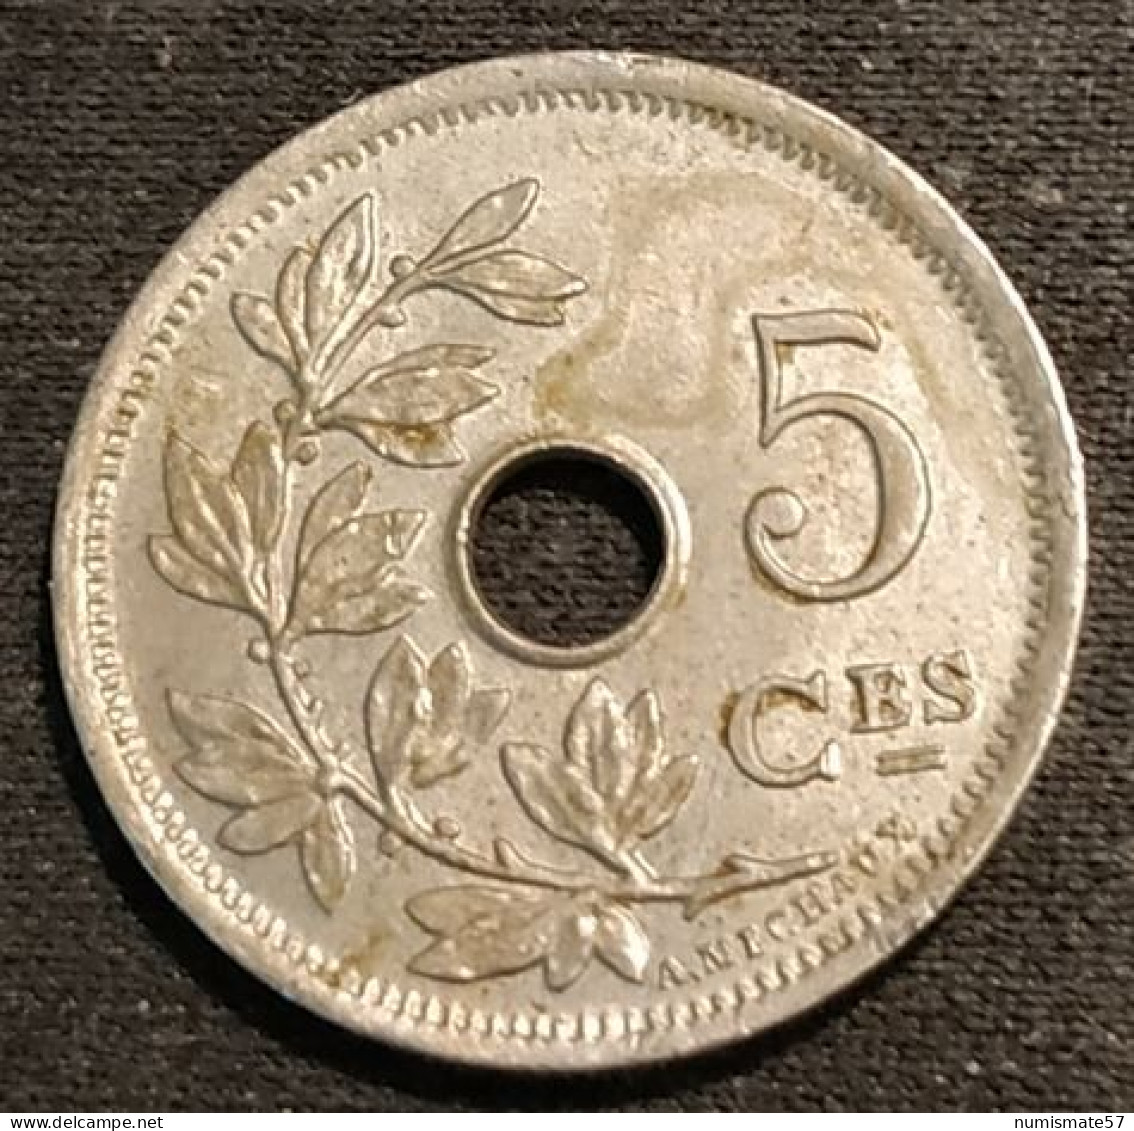 BELGIQUE - BELGIUM - Très Jolie 5 CENTIMES 1902 - Légende FR - Petite Date - Léopold II - Type Michaux - KM 47 - 5 Cents